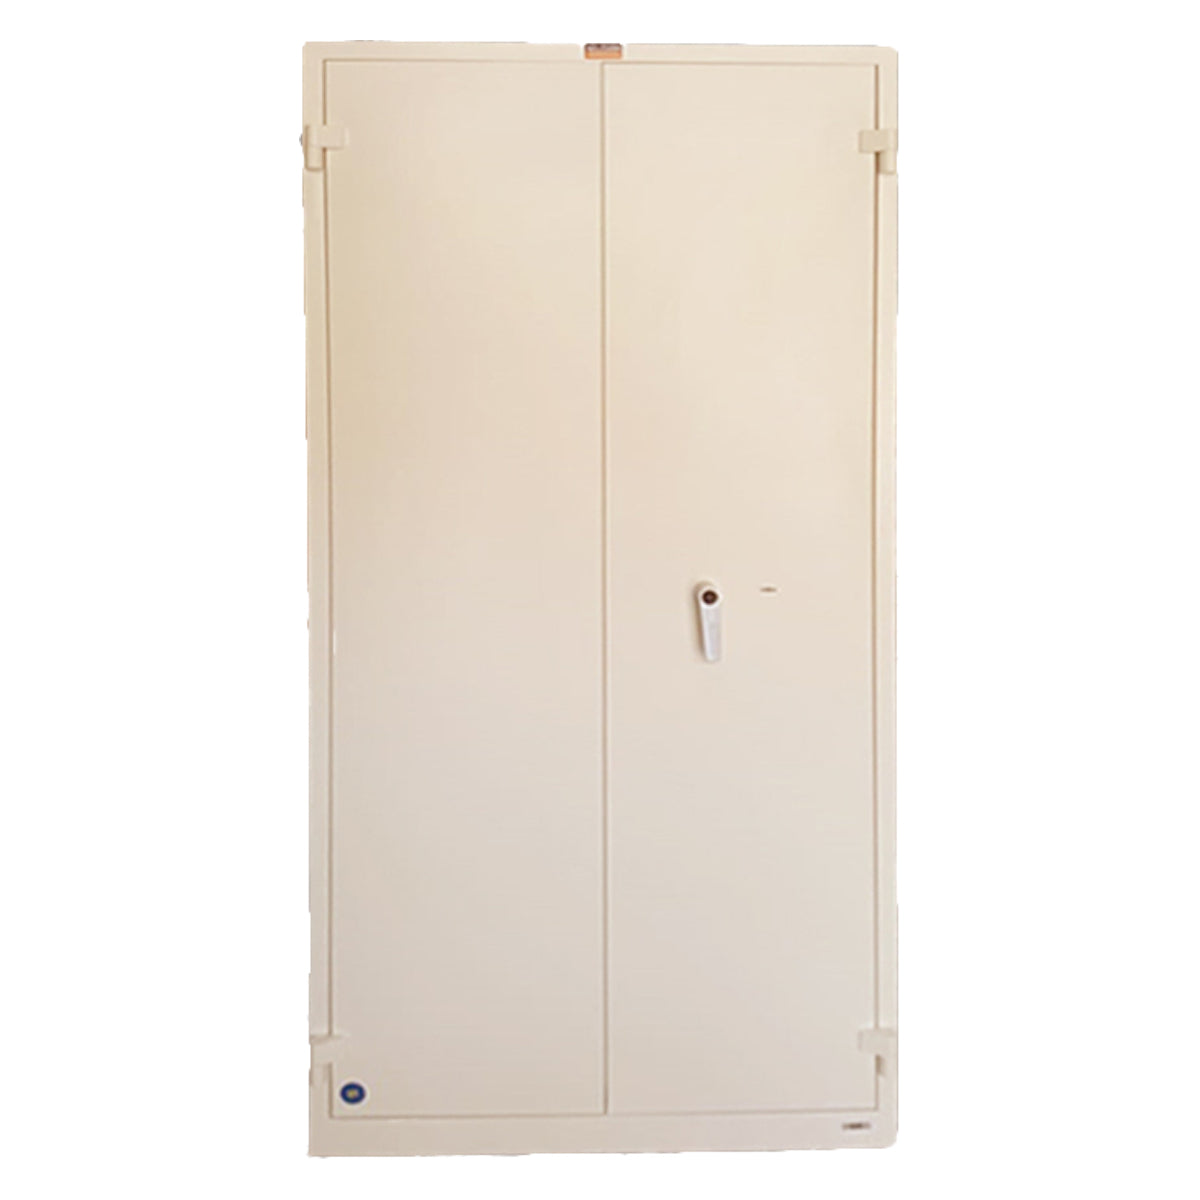 Valberg BM 1993 KL Fire Resistant Safe Cabinet, White